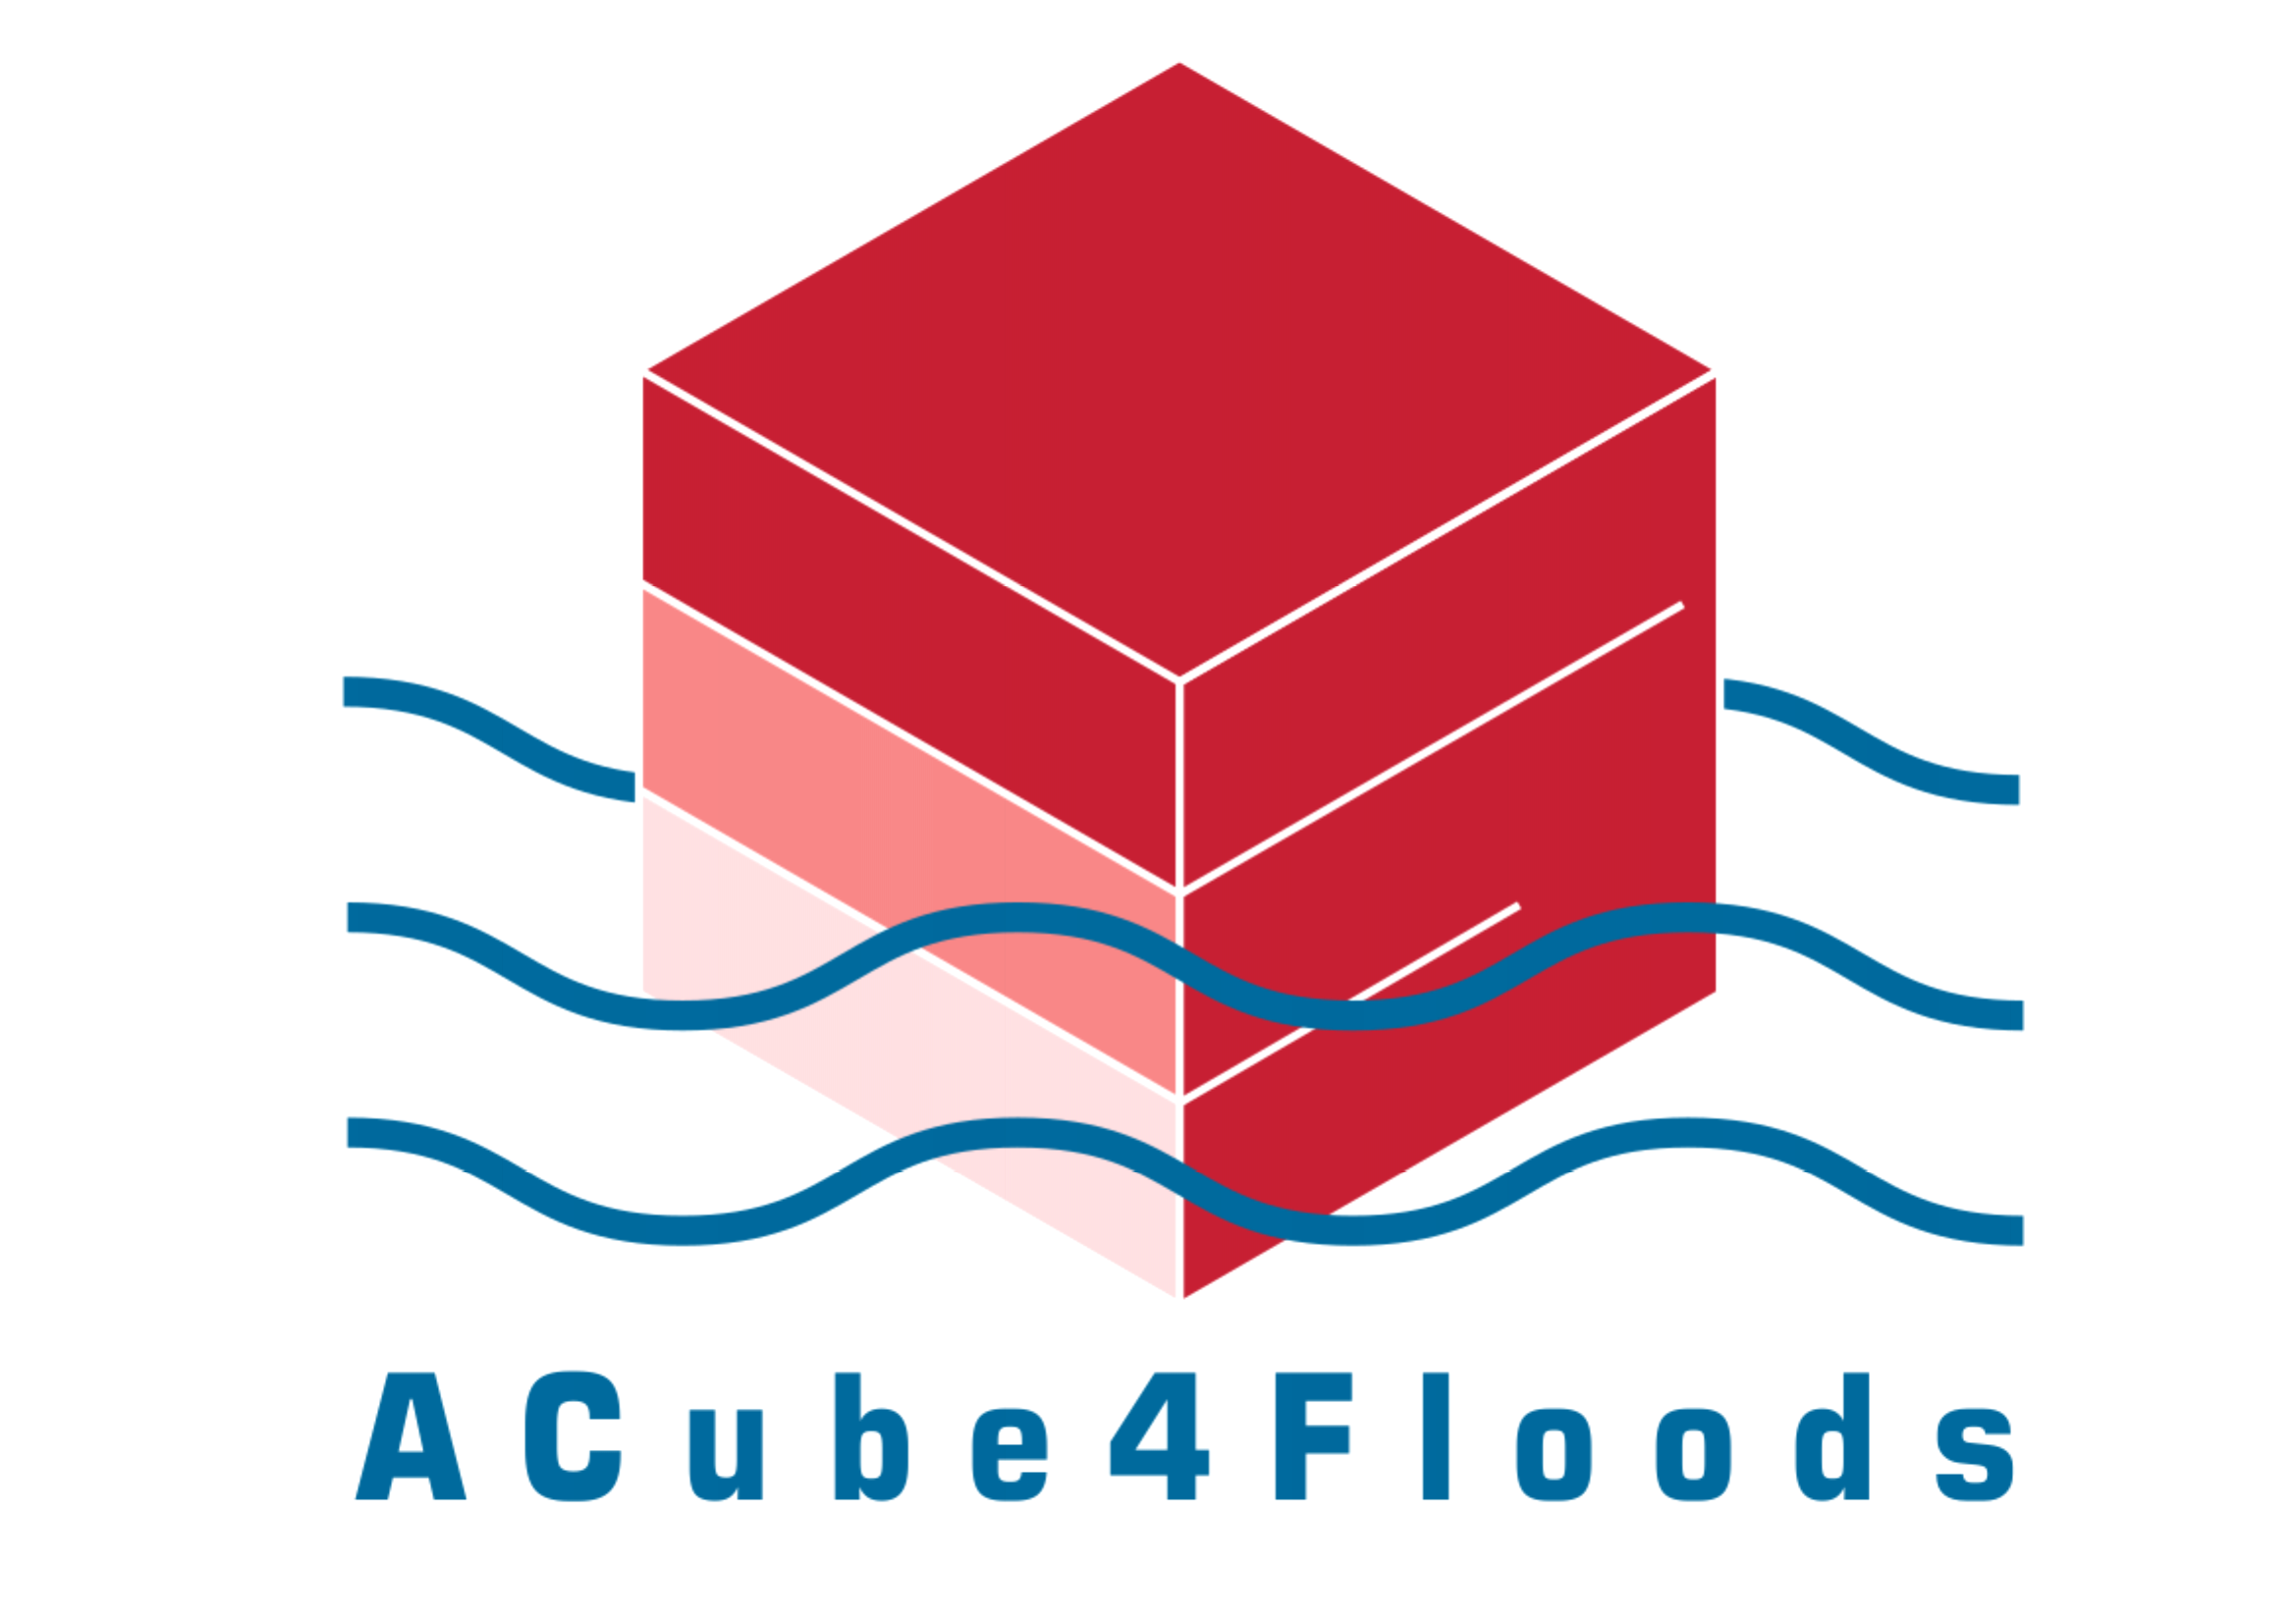 ACube4floods logo